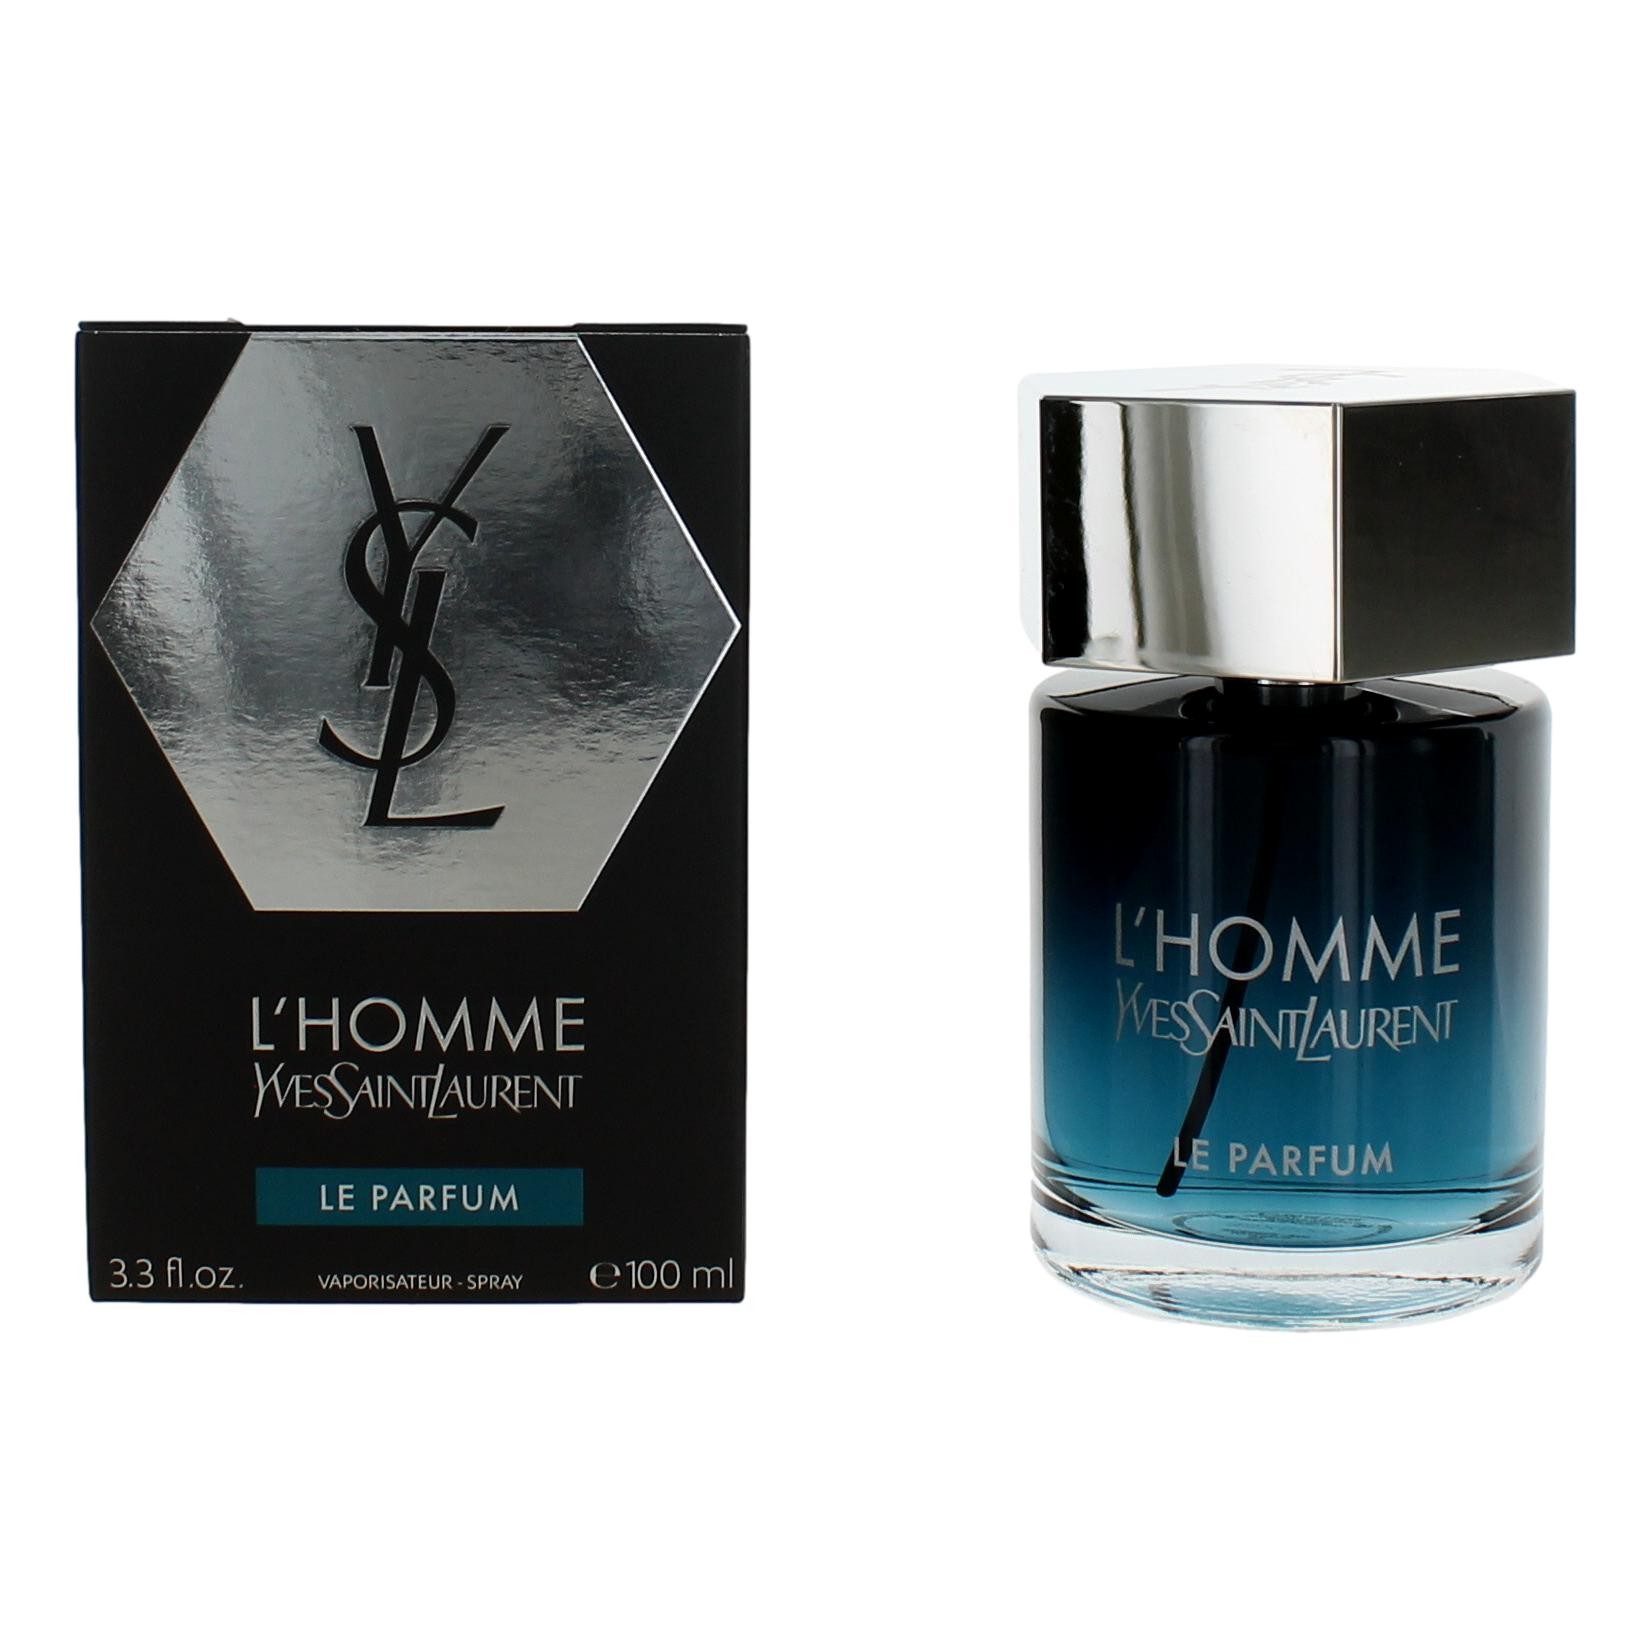 L'Homme Le Parfum by Yves Saint Laurent 3.3 oz Eau De Toilette Spray for Men